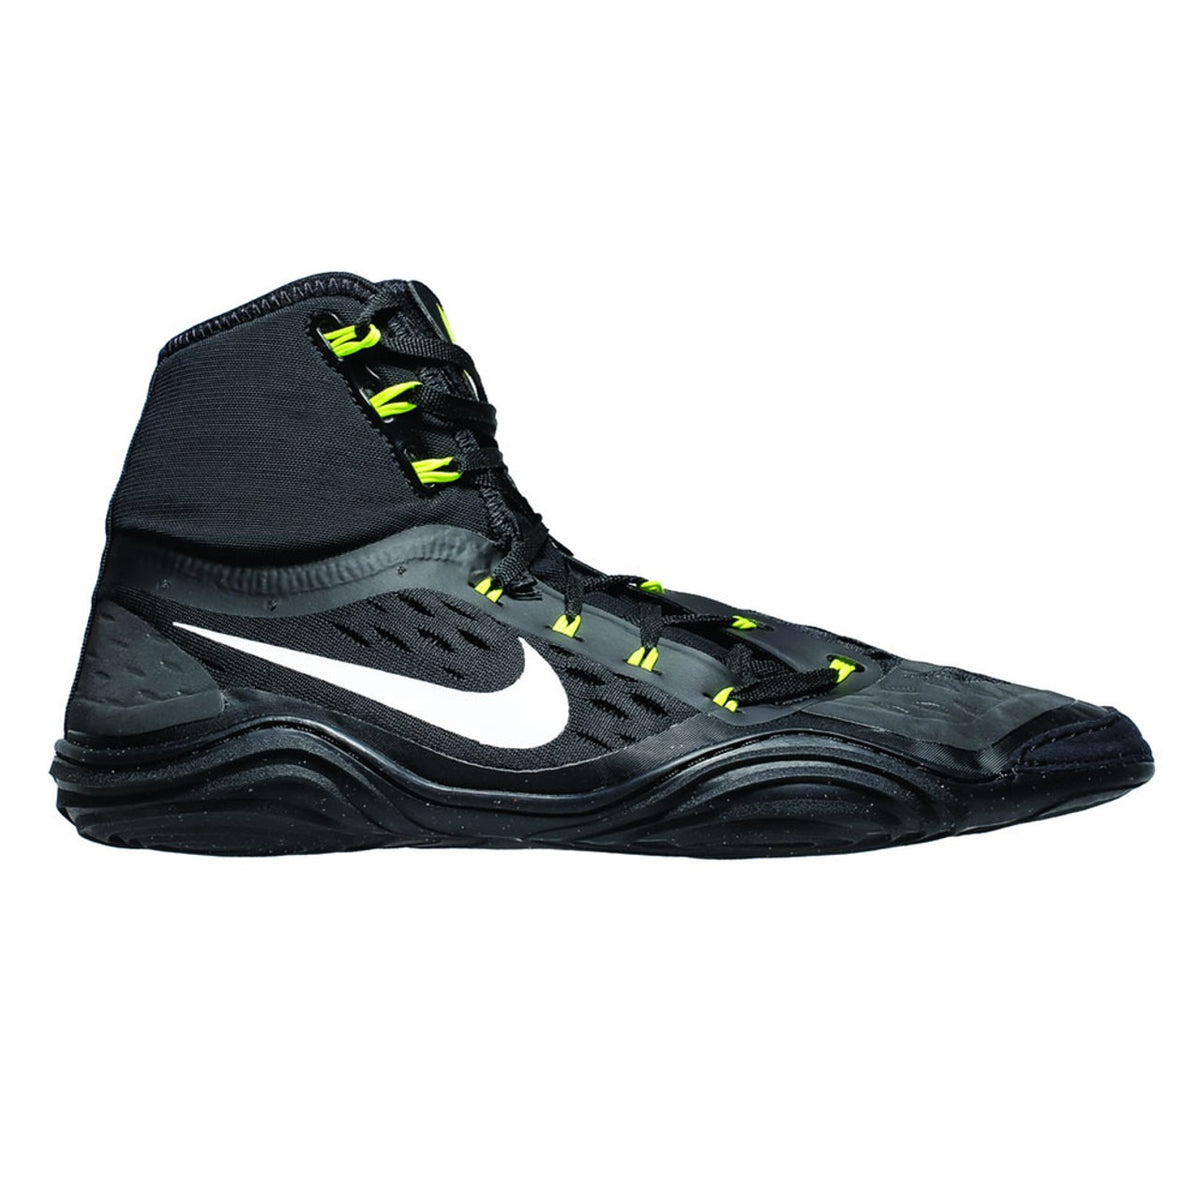 Nike imtynių bateliai HYPERSWEEP LE. Profesionalūs imtynių batai visiems ambicingiems imtynininkams. Su pažangiausia technologija Nike Hypersweep puikiai sukimba ant imtynių kilimėlio. Treniruotėse ir varžybose. Čia juoda/voltų spalva.